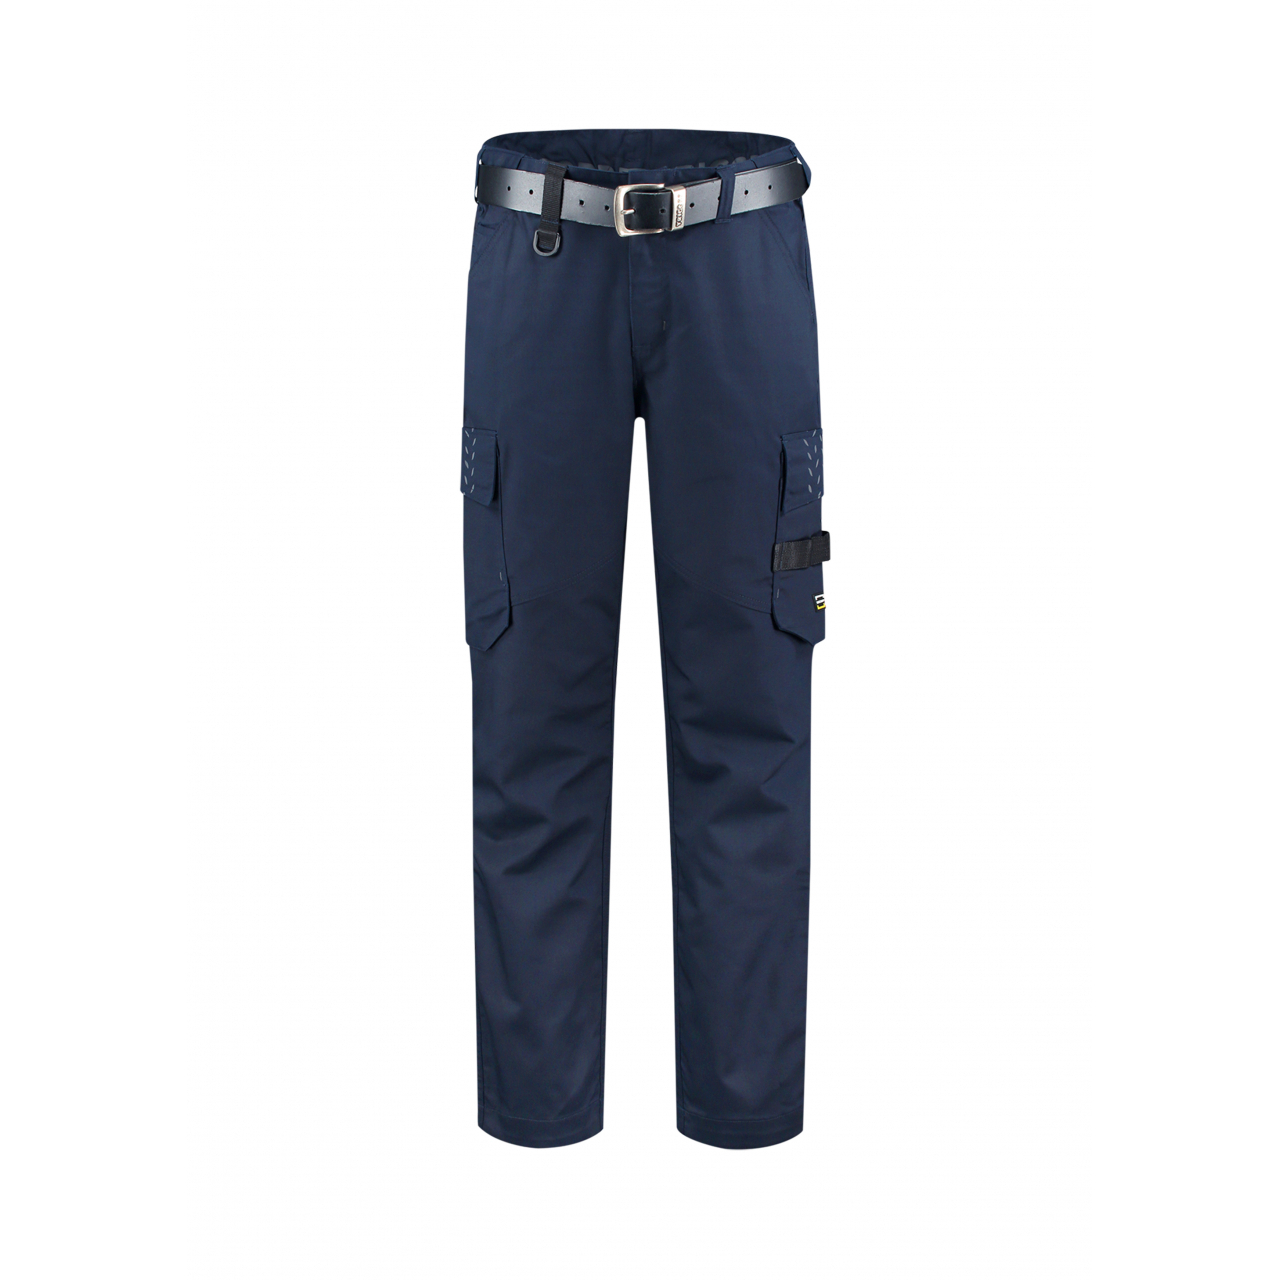 Pracovní kalhoty unisex Tricorp Work Pants Twill - tmavě modré, 44